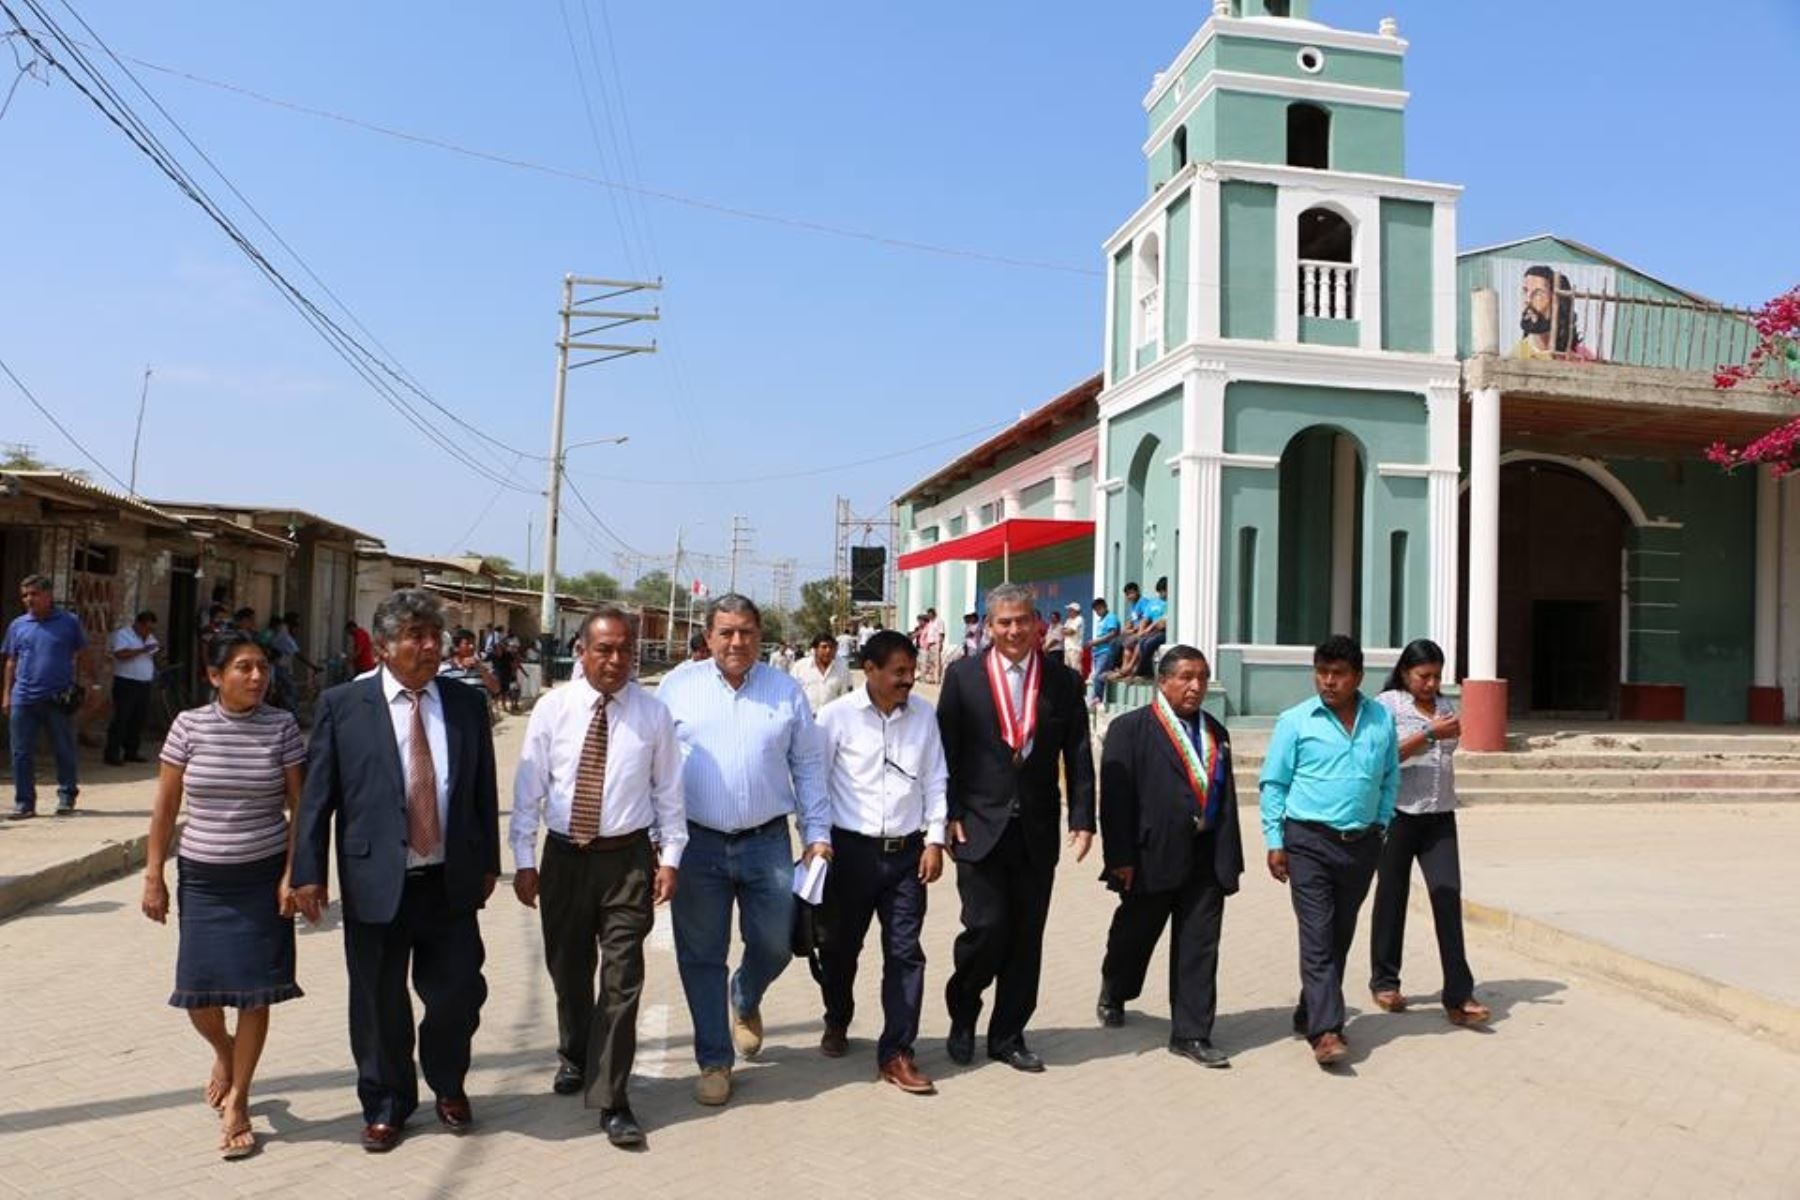 Gobernador regional de Piura, Reynaldo Hilbck, participa de celebraciones por aniversario del centro poblado de Pedregal Grande.